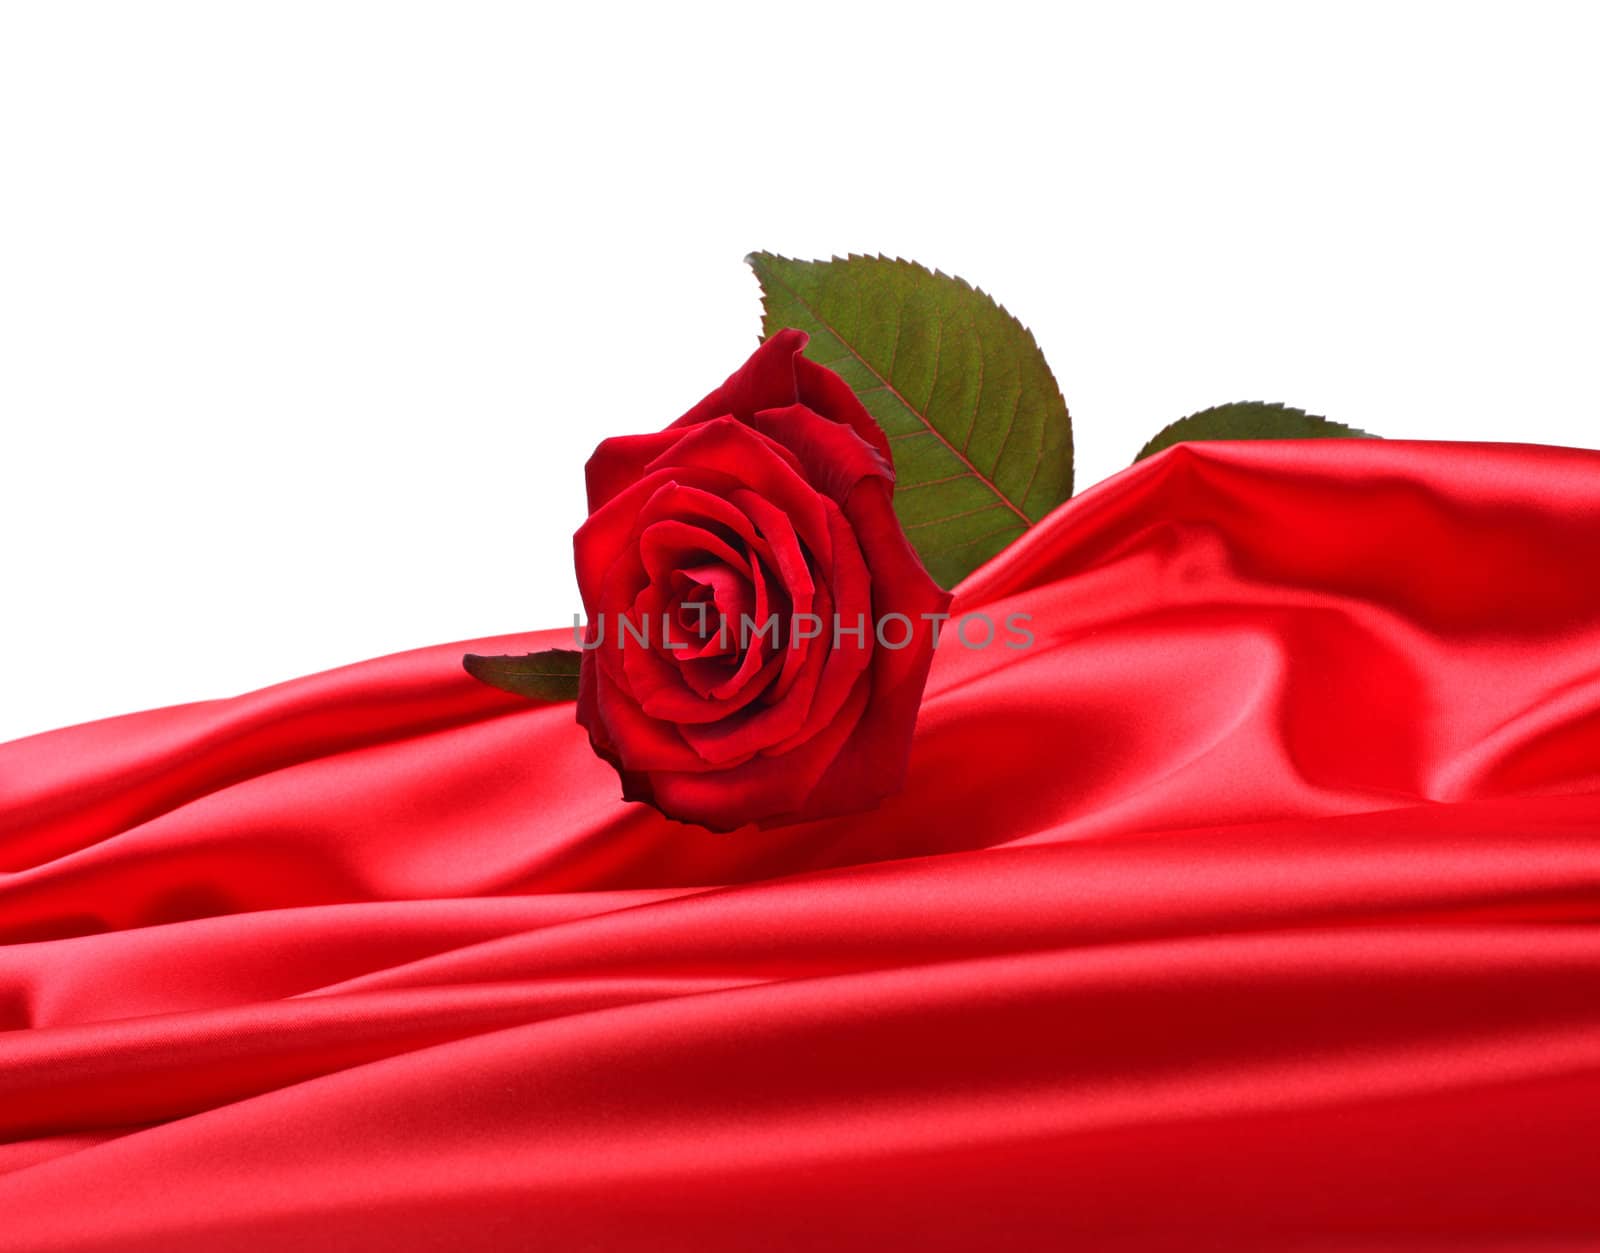 rose on red silk by rudchenko